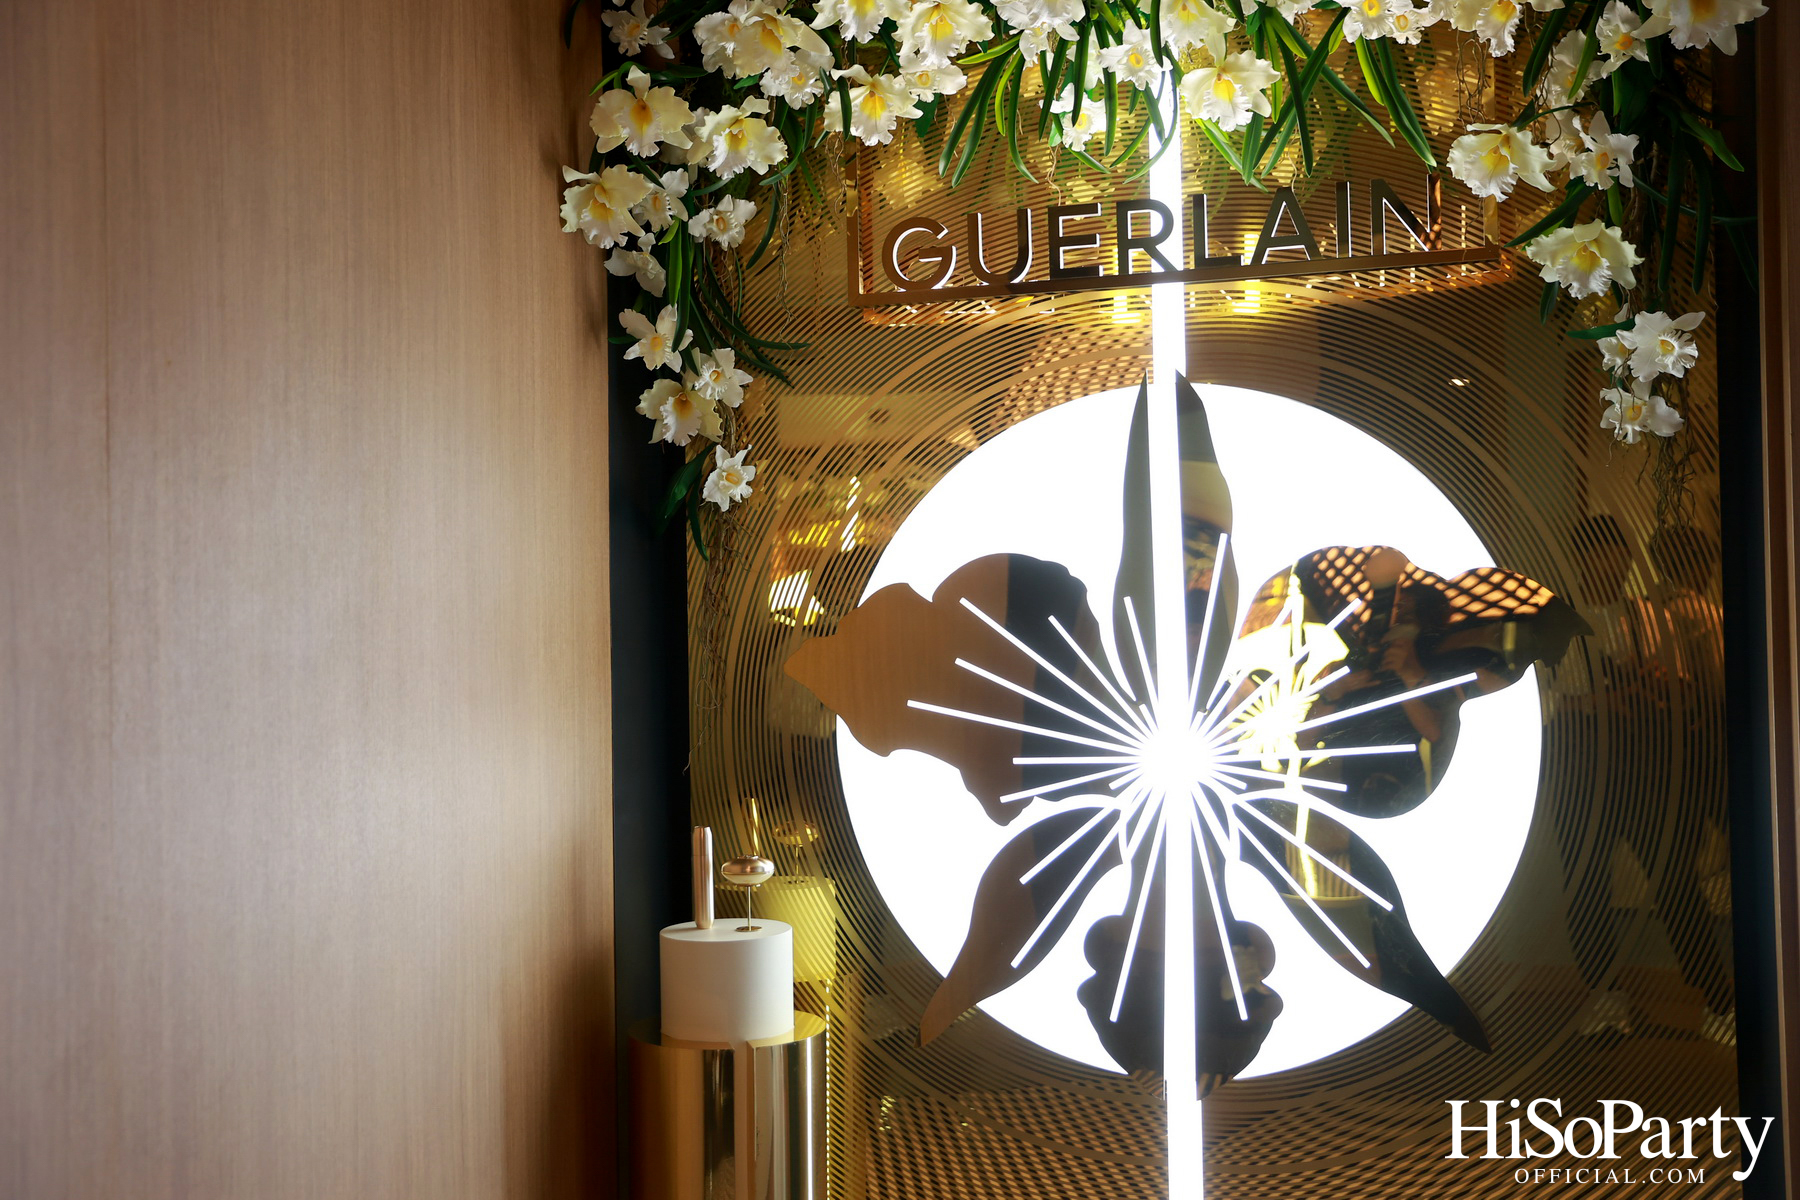 GUERLAIN เปิดตัวนวัตกรรมสุดล้ำแห่งการฟื้นบำรุงและยกกระชับ Gold Nobile Orchid แห่งแรกใน Guerlain Apartment 